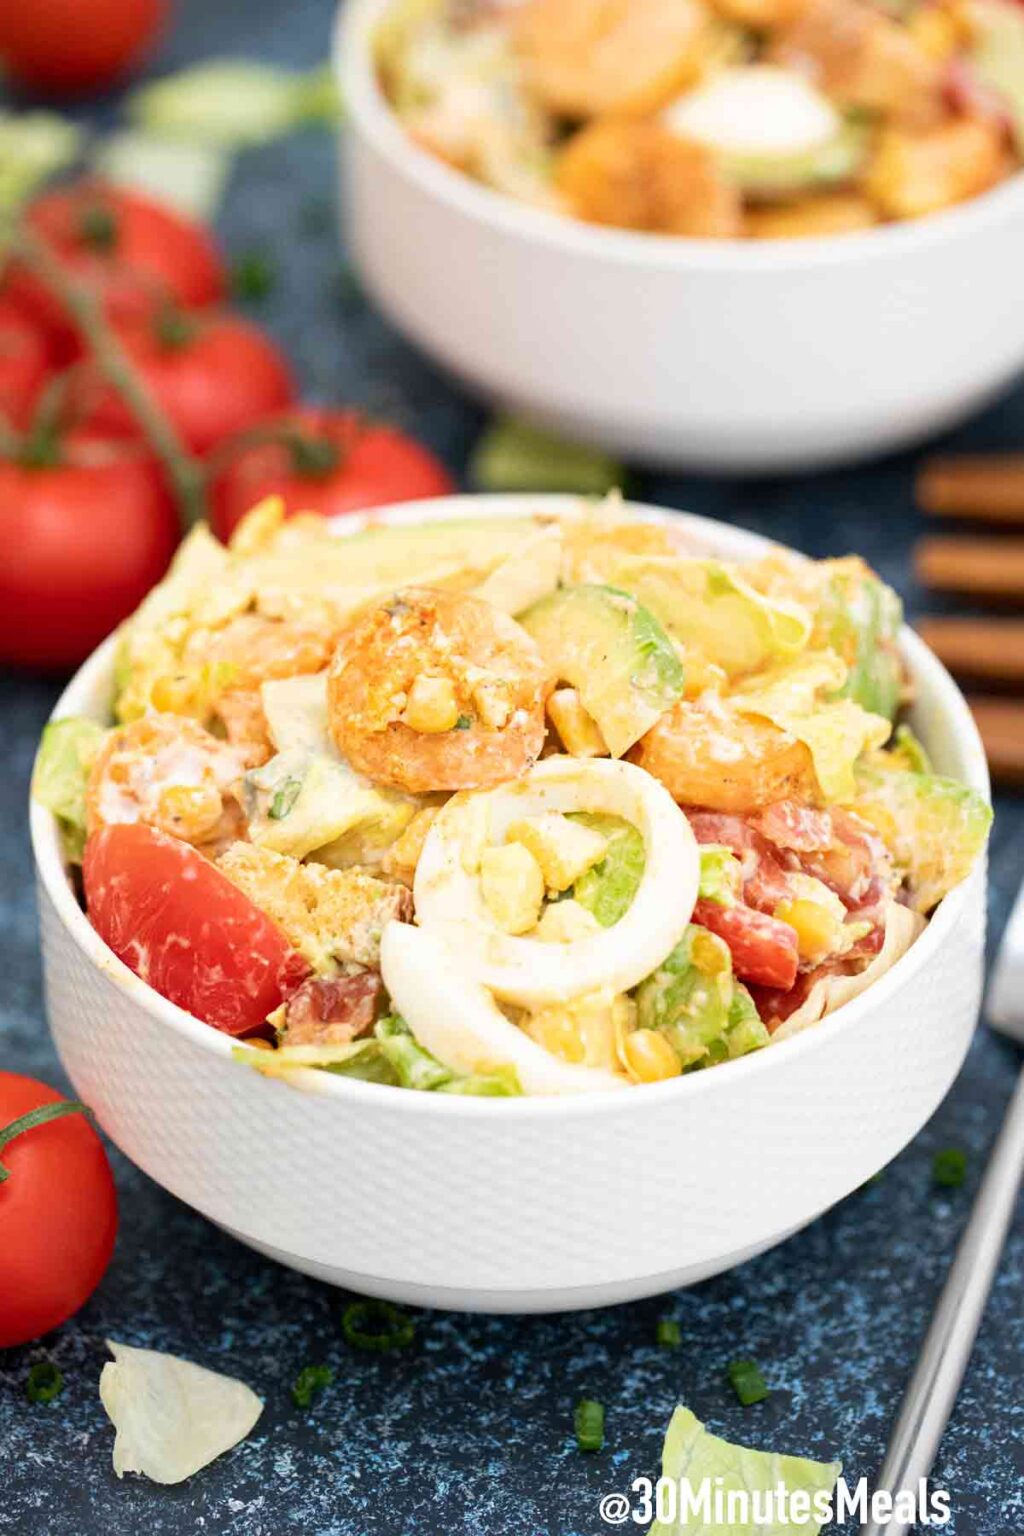 Shrimp Cobb Salad with Avocado - 30 minutes meals